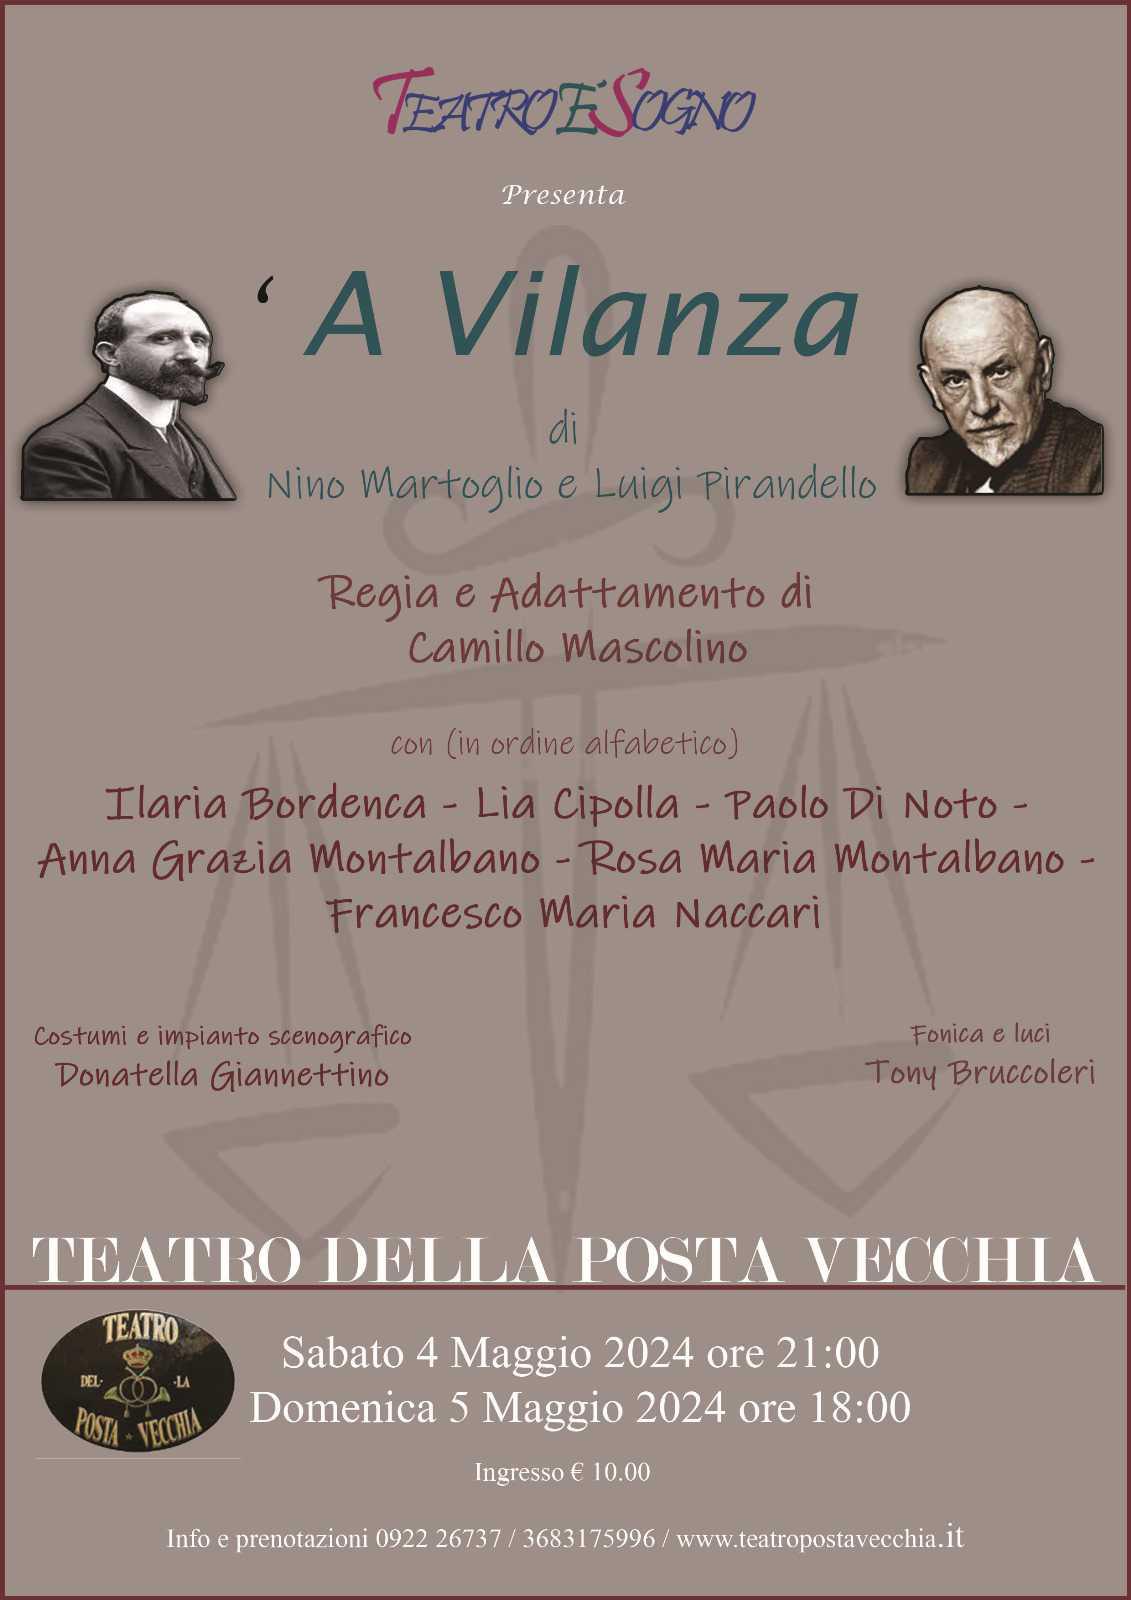 TeatroèSogno presenta "A Vilanza" di Nino Martoglio e Luigi Pirandello (inizio ore 21:00)